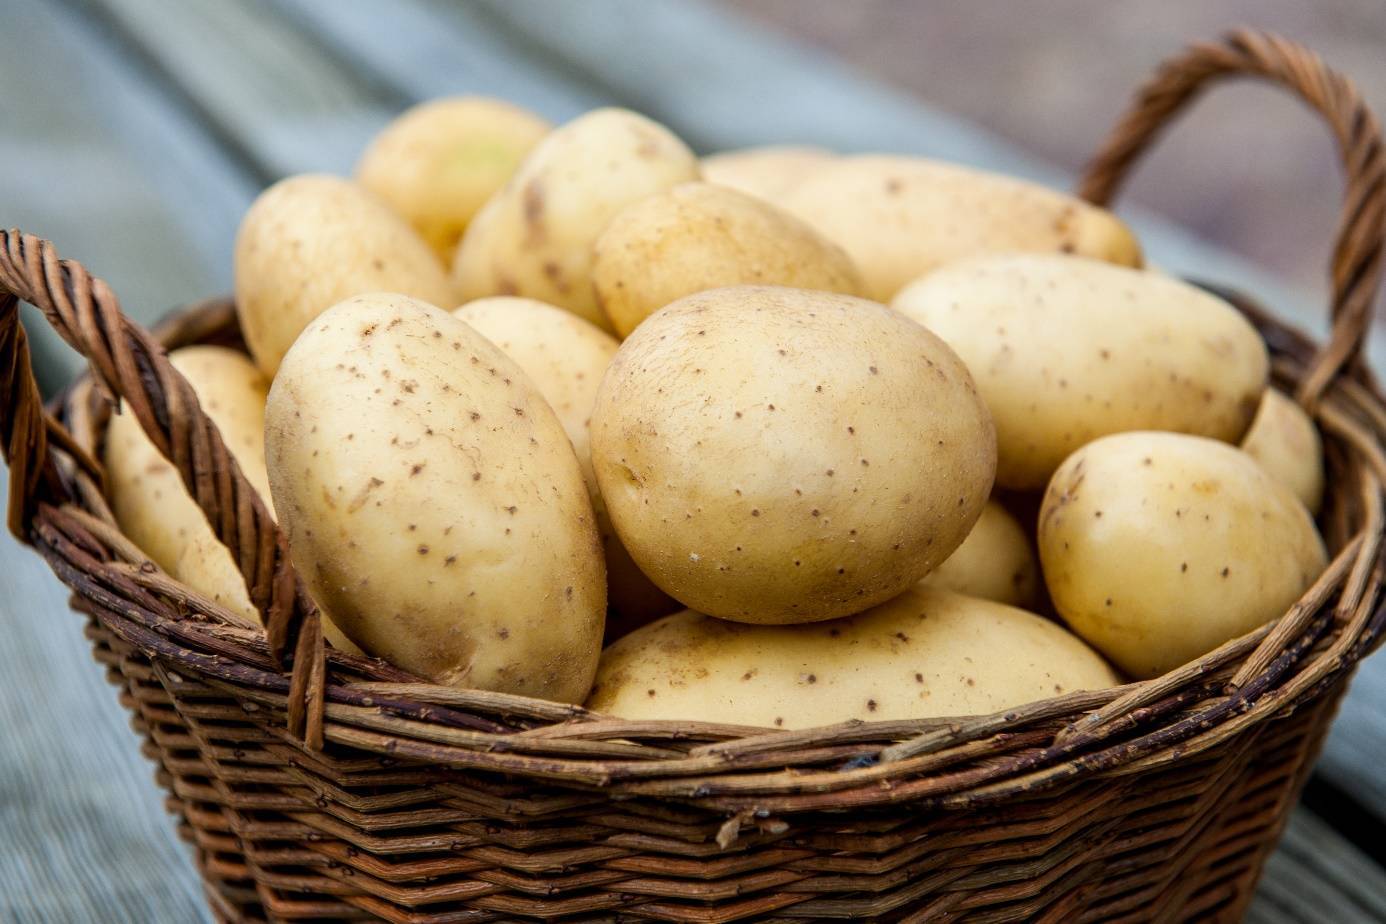 Календарь посадки картофеля на май 2019 года, температурные коррективы, оптимальные сроки высадки по регионам россии, правильная посадка картофеля в открытый грунт, удобрения и другие способы увеличить урожайность